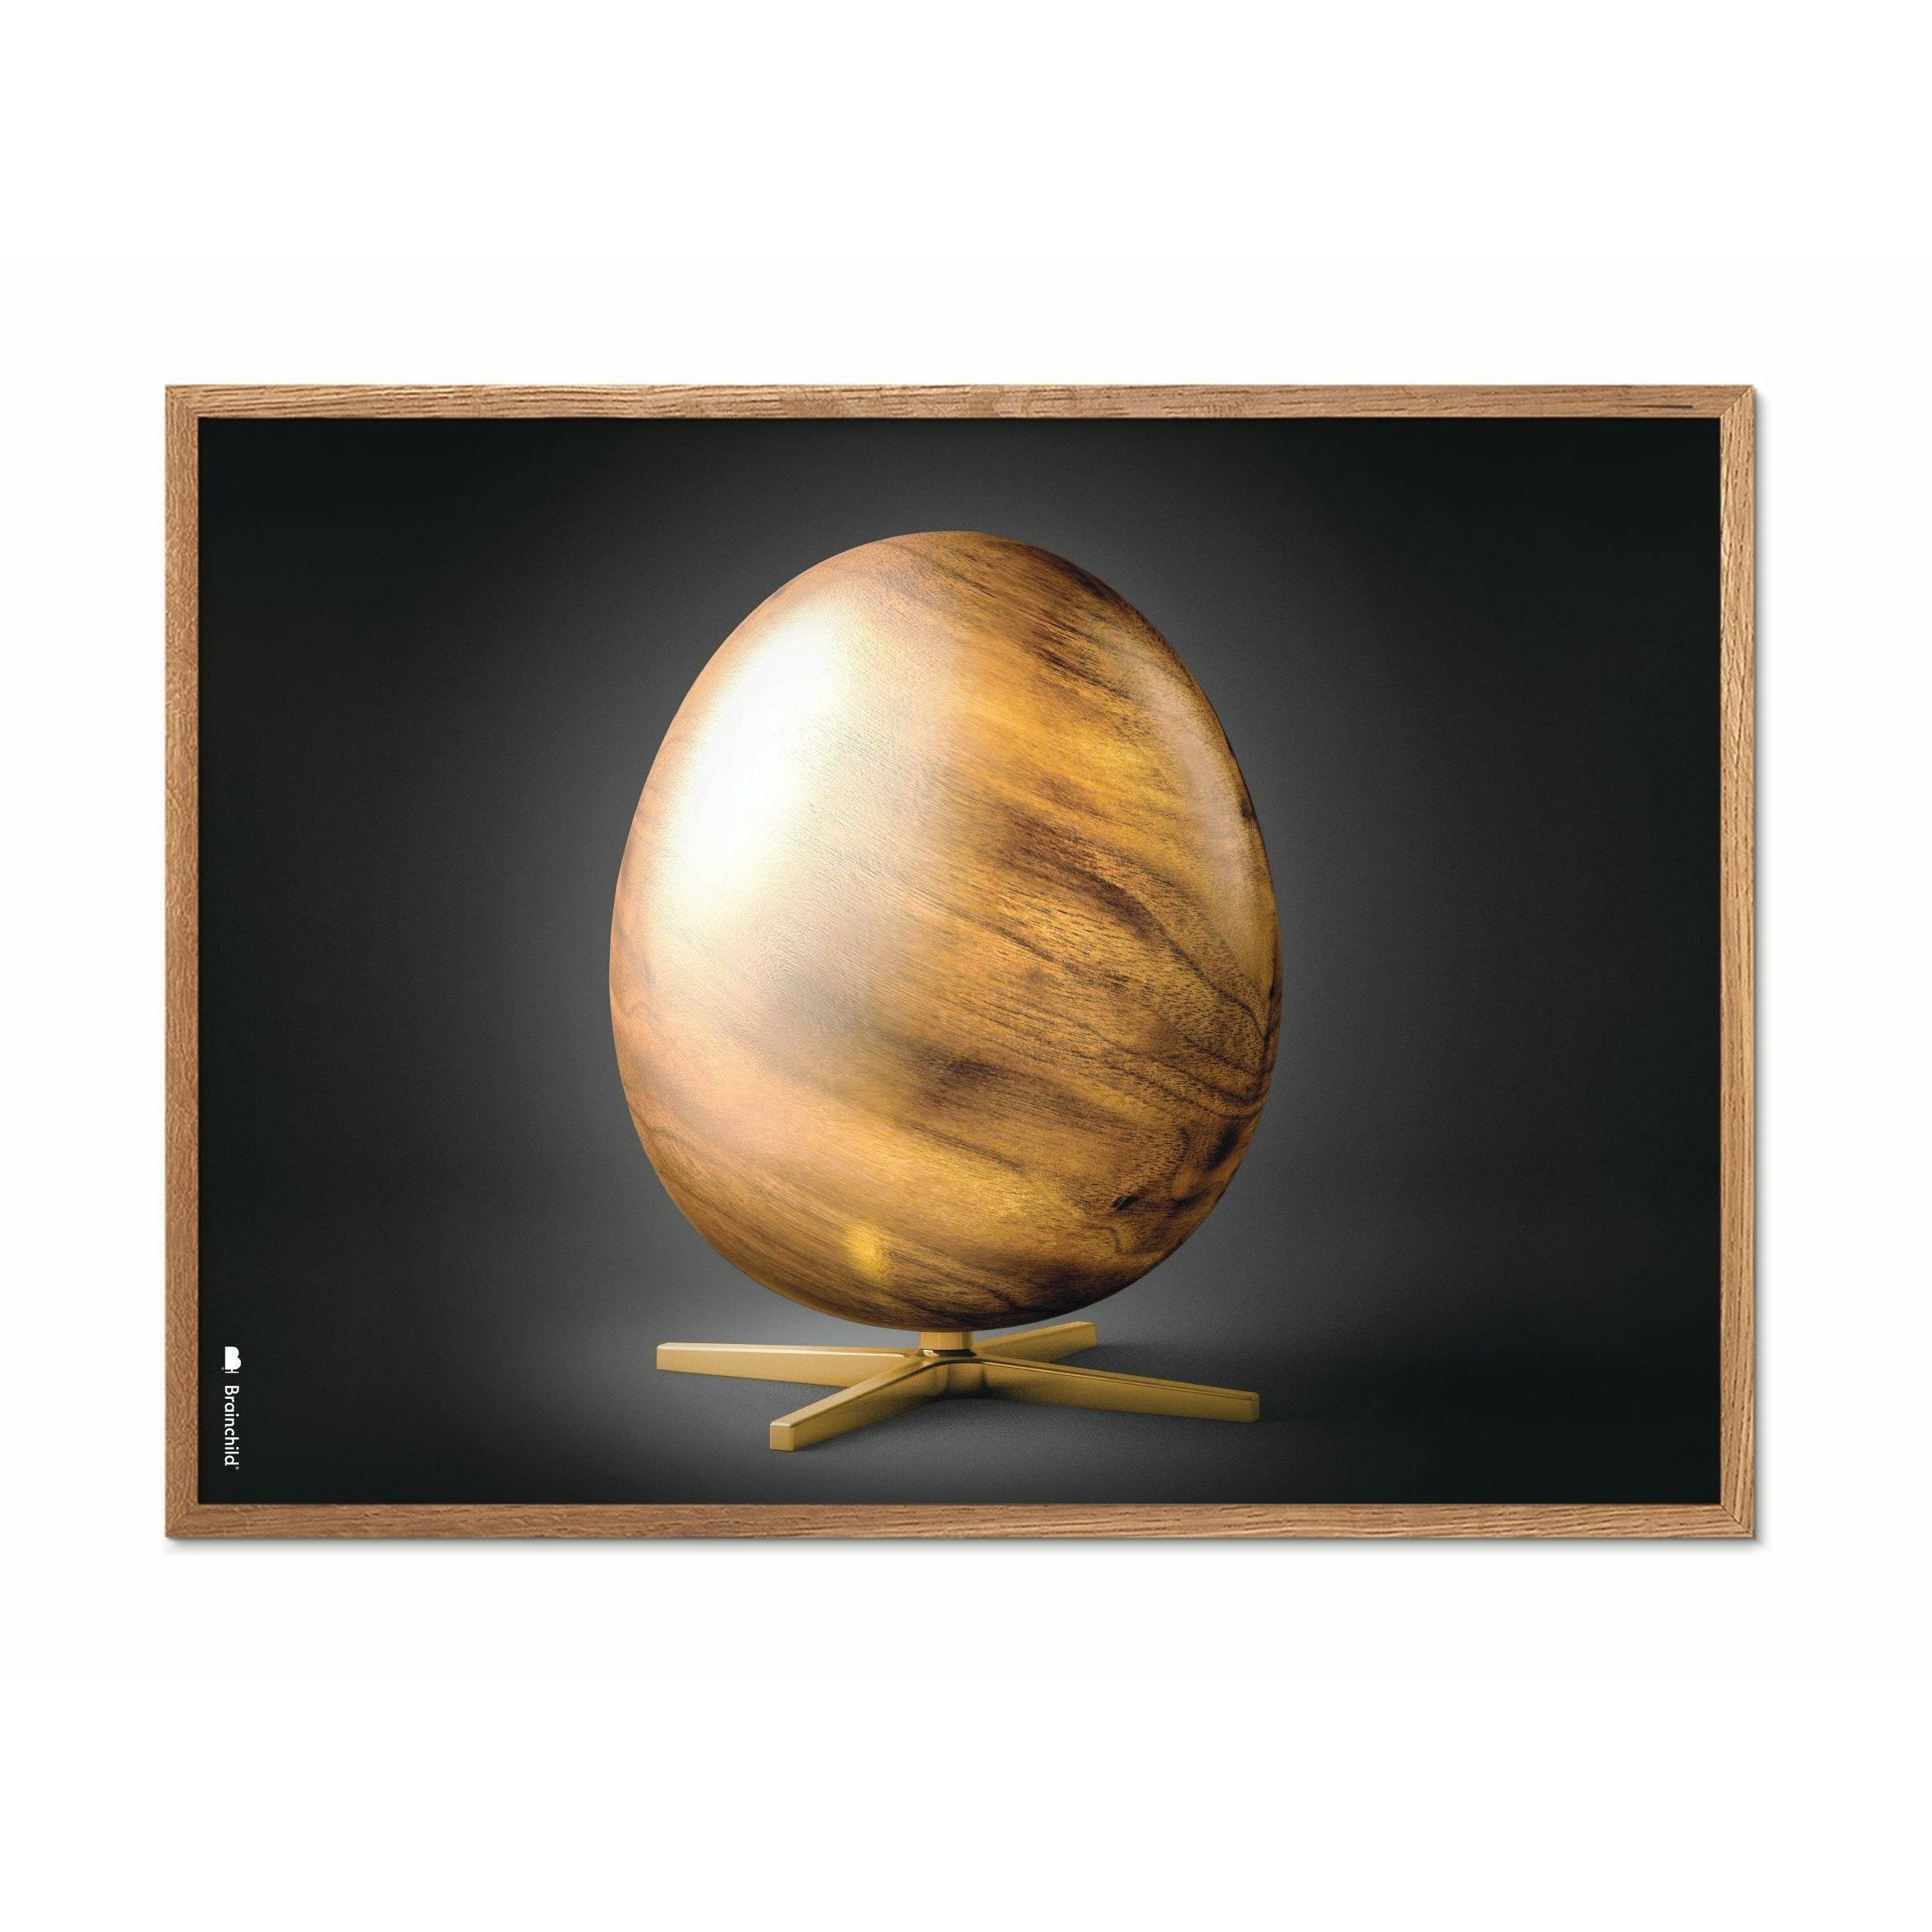 Brainchild Egg Cross Format Poster, Frame Made Of Light Wood A5, Black